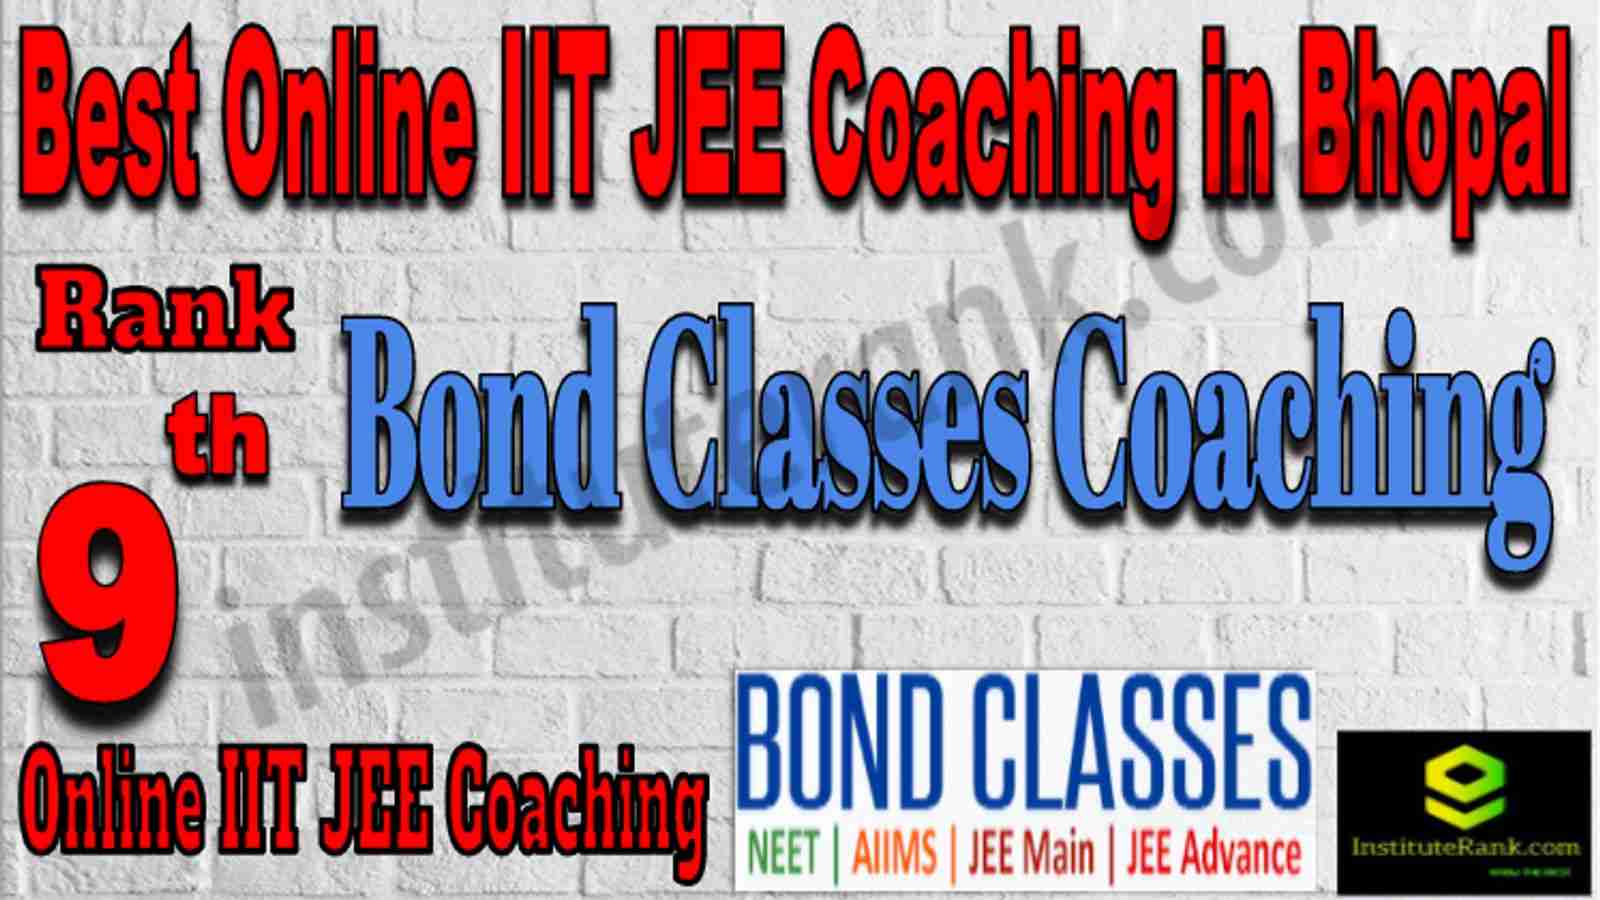 Rank 9 Best Online IIT JEE Coaching in Bhopal